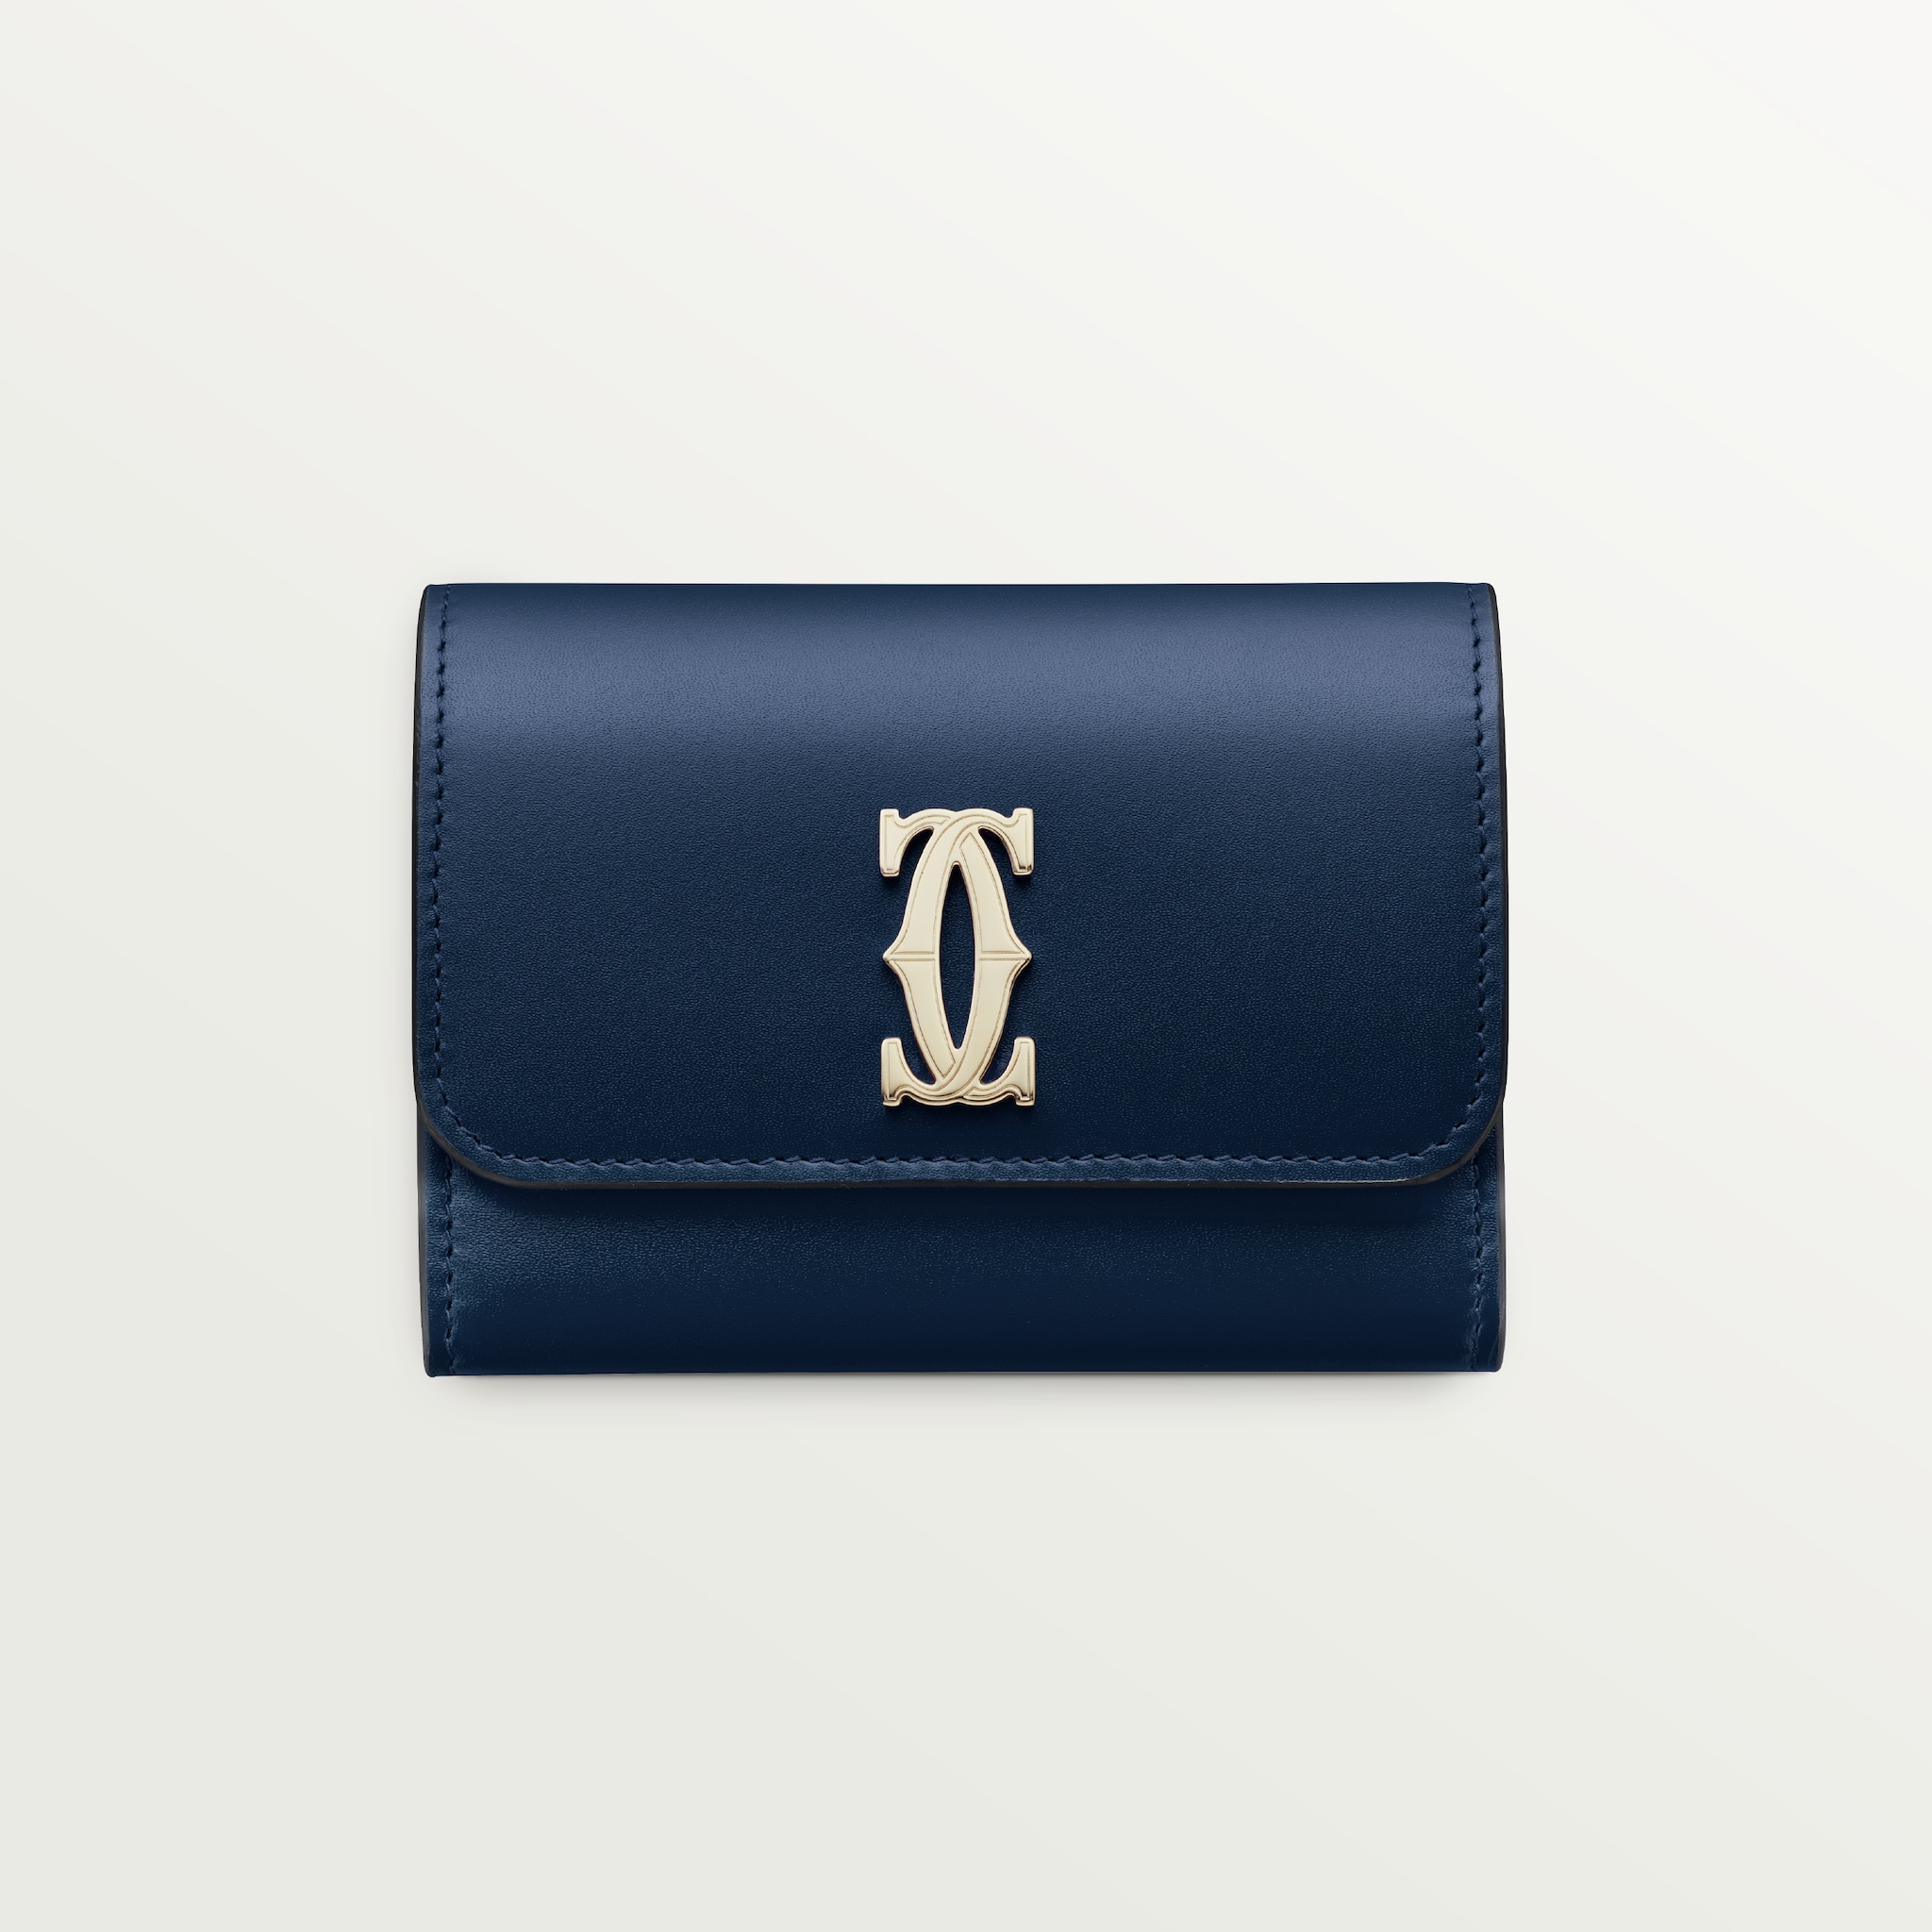 Mini wallet, C de CartierMidnight blue calfskin, golden finish